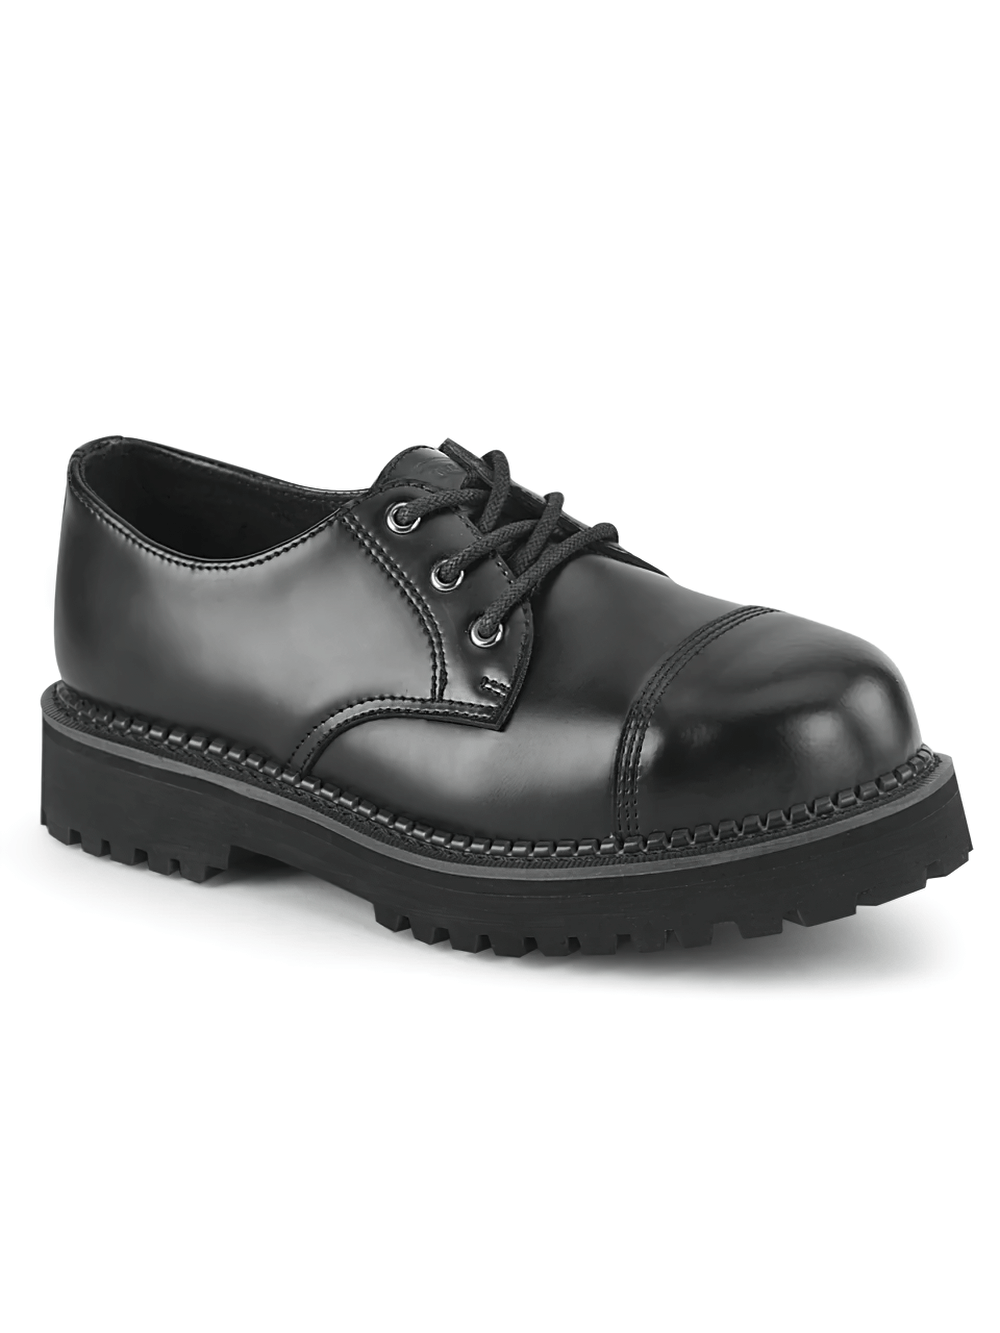 DEMONIA Black Leather Lace-Up Unisex Aesthetics Shoes